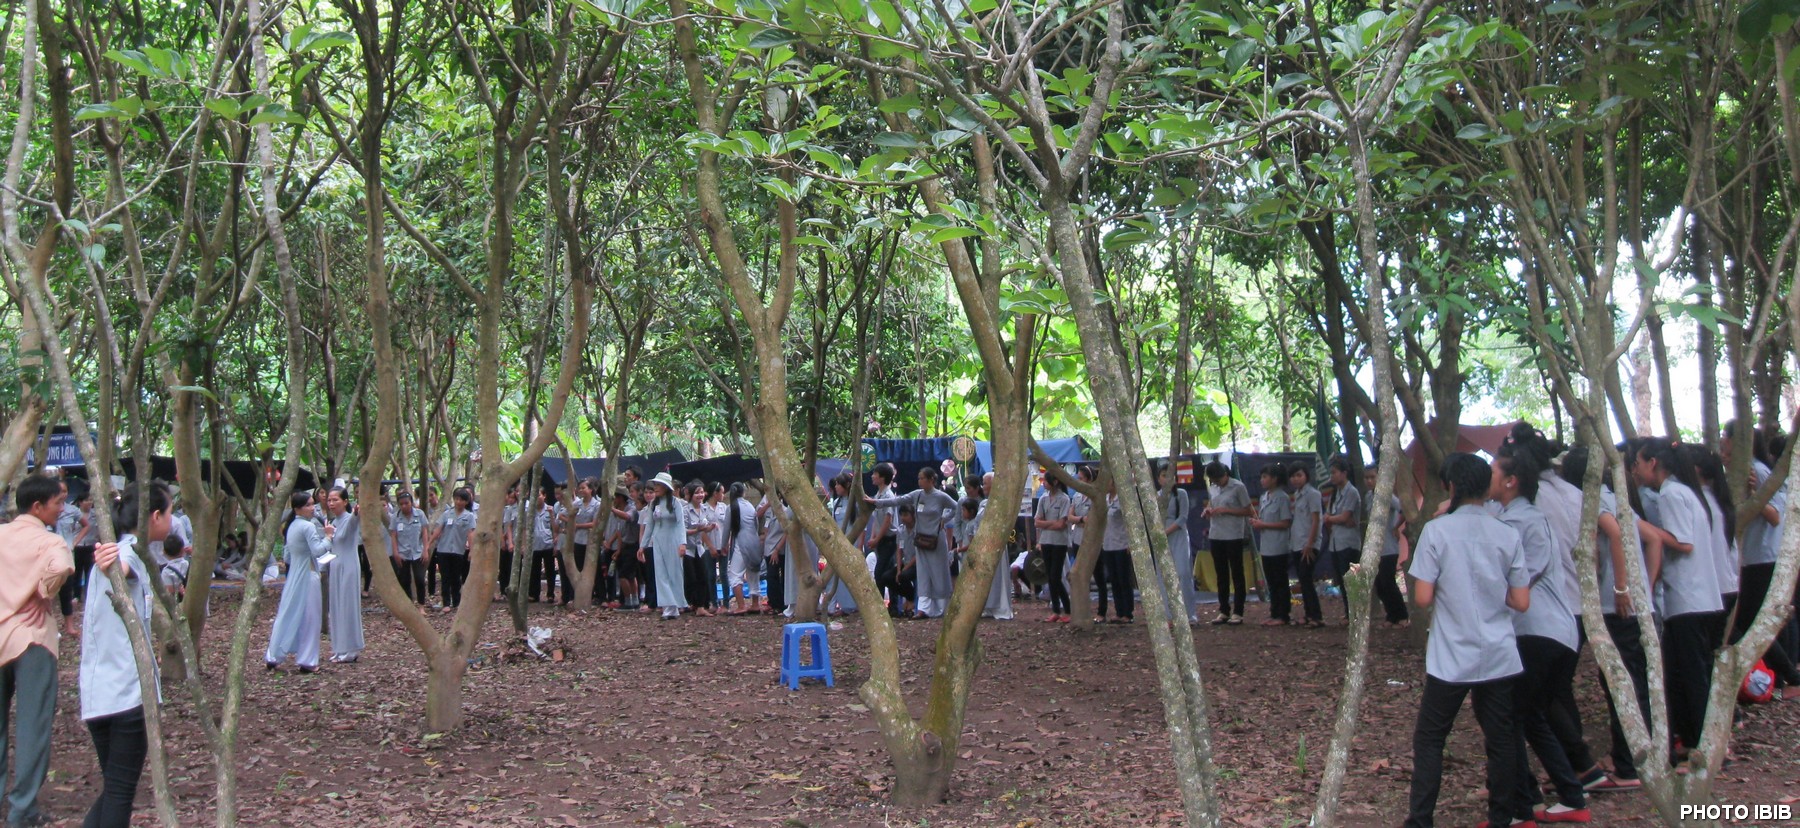 Trại sinh trong rừng chủa Bảo Quang - Hình PTTPGQT